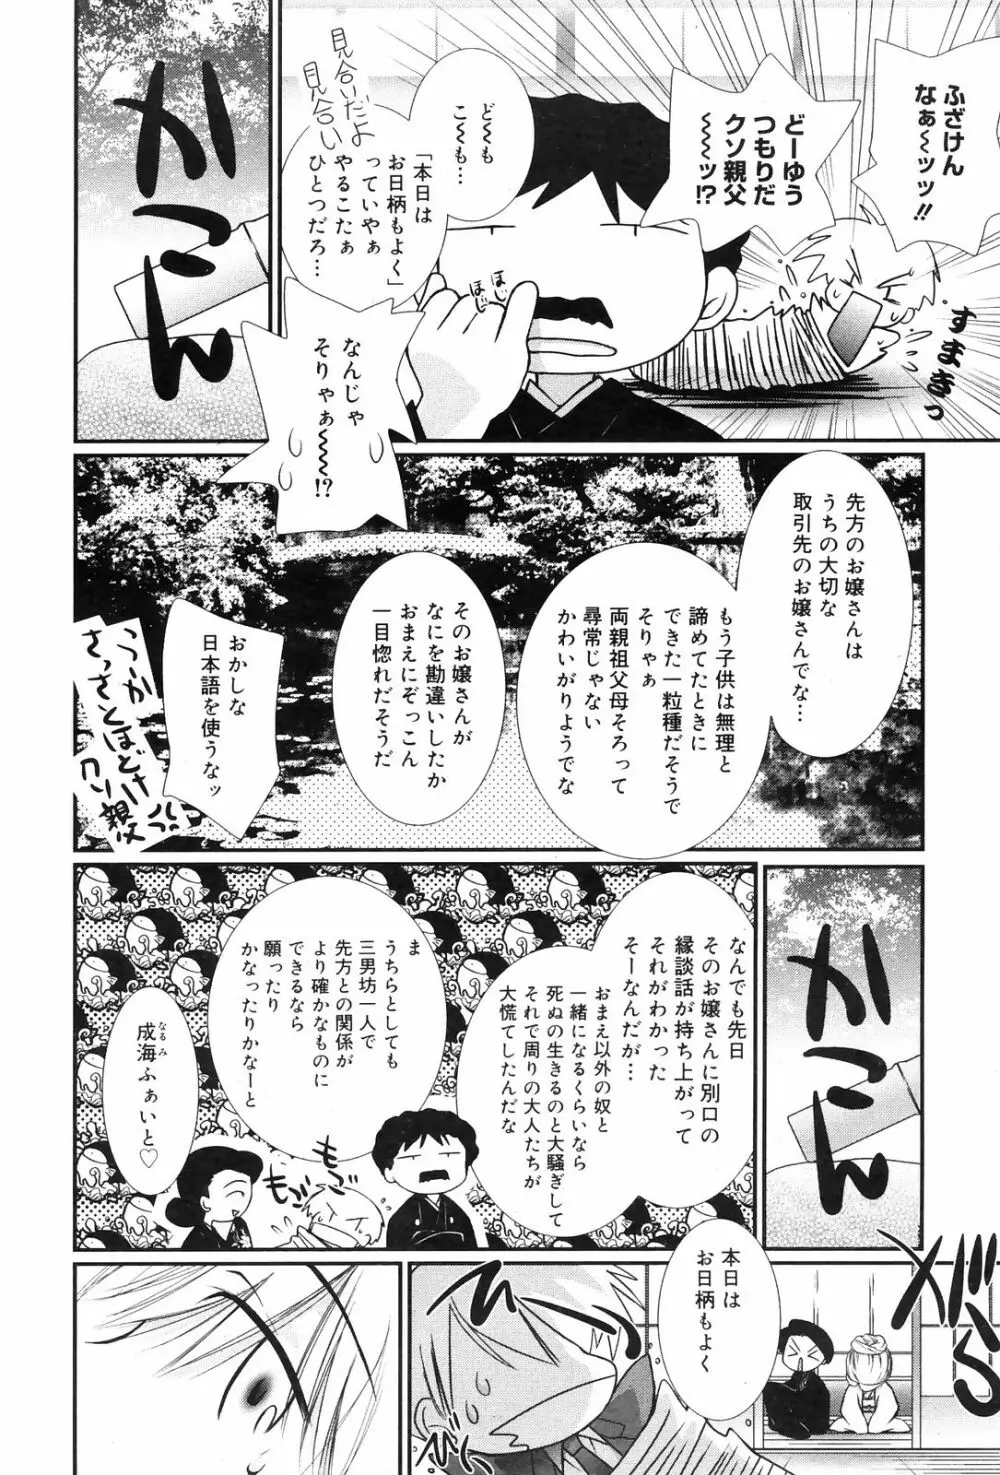 Manga Bangaichi 2009-01 60ページ